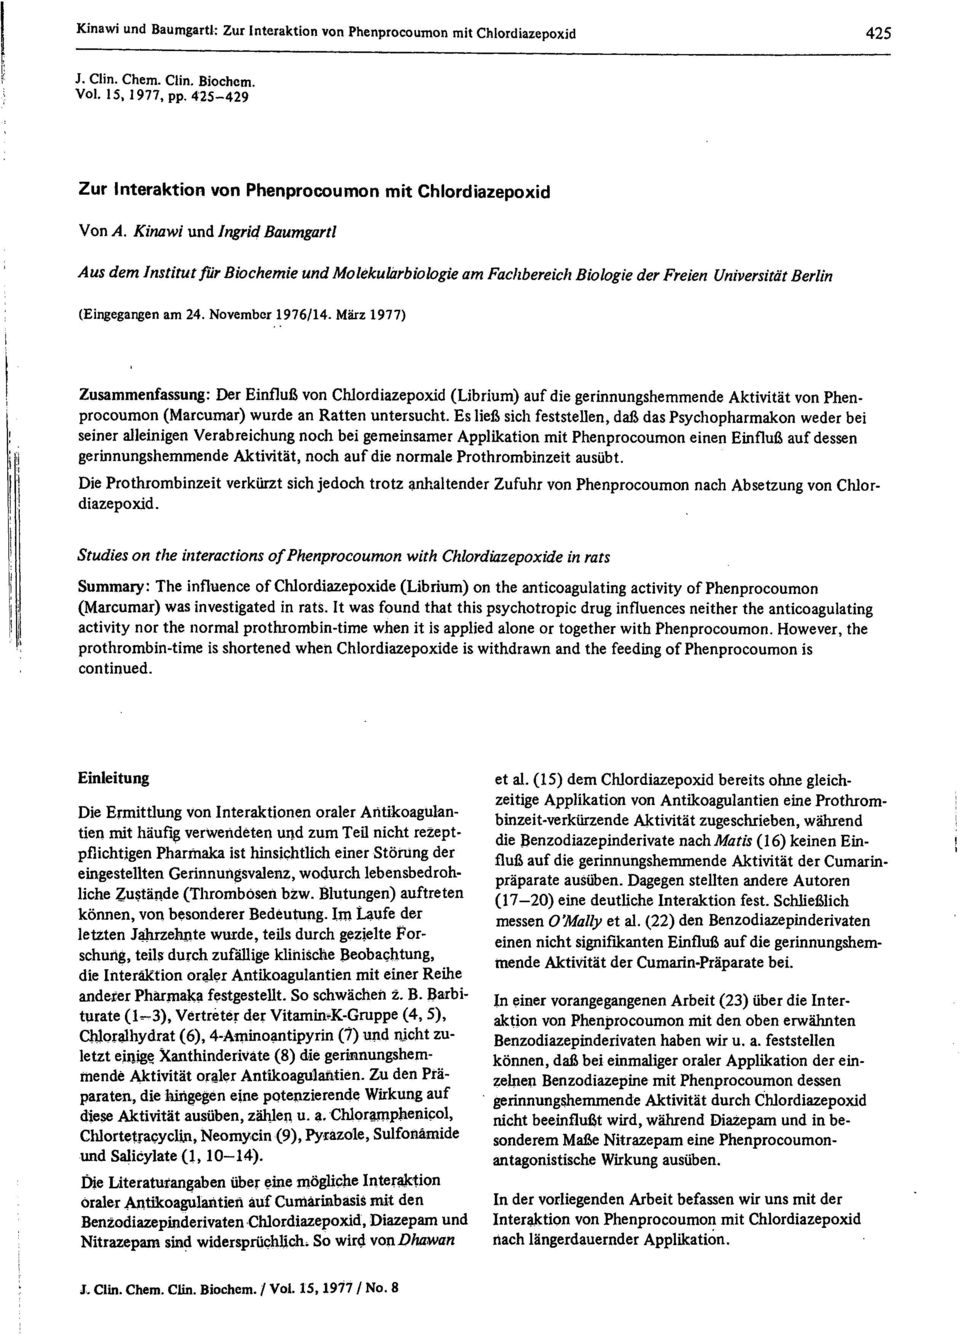 März 1977) Zusammenfassung: Der Einfluß von Chlordiazepoxid (Librium) auf die gerinnungshemmende Aktivität von Phenprocoumon (Marcumar) wurde an Ratten untersucht.